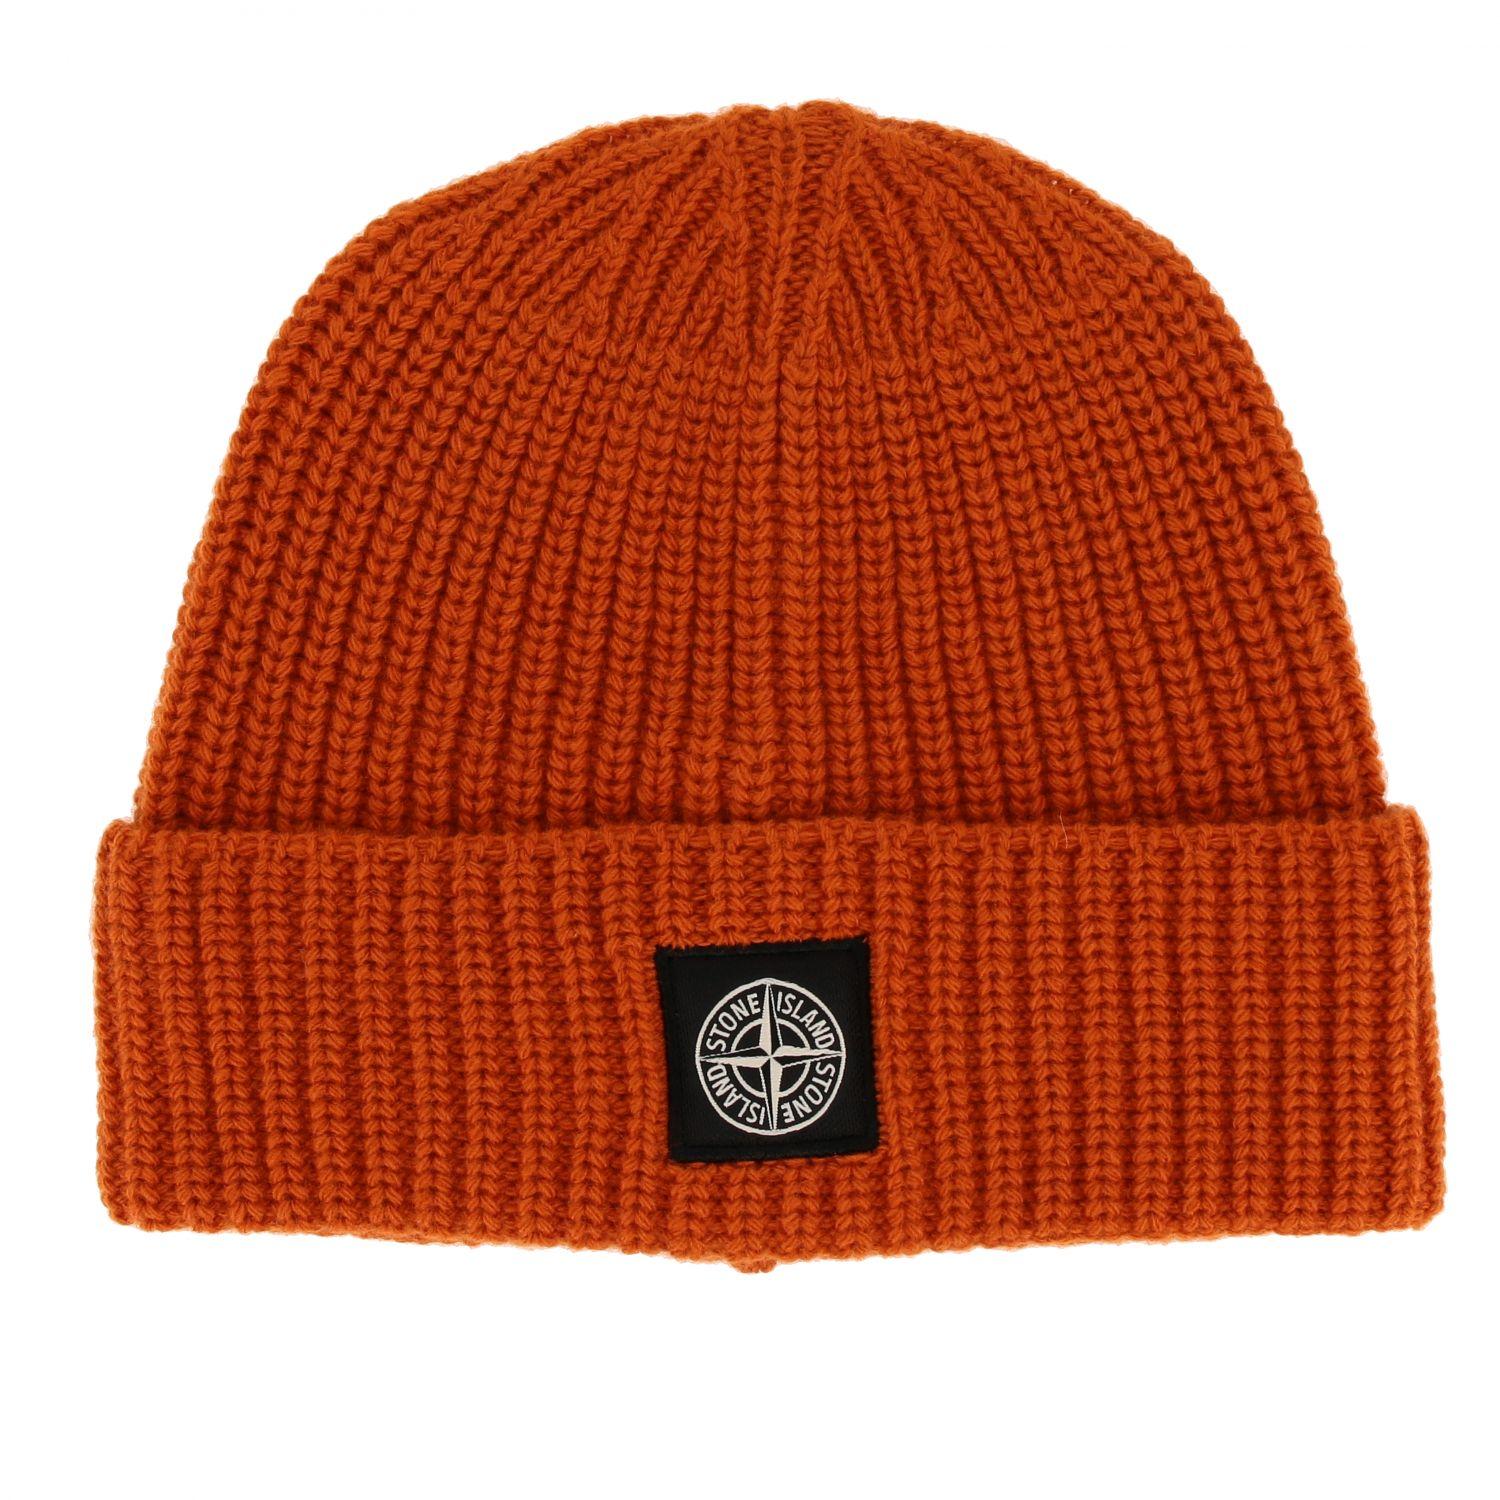 Stone Island Wool Hat in Orange for Men - Lyst